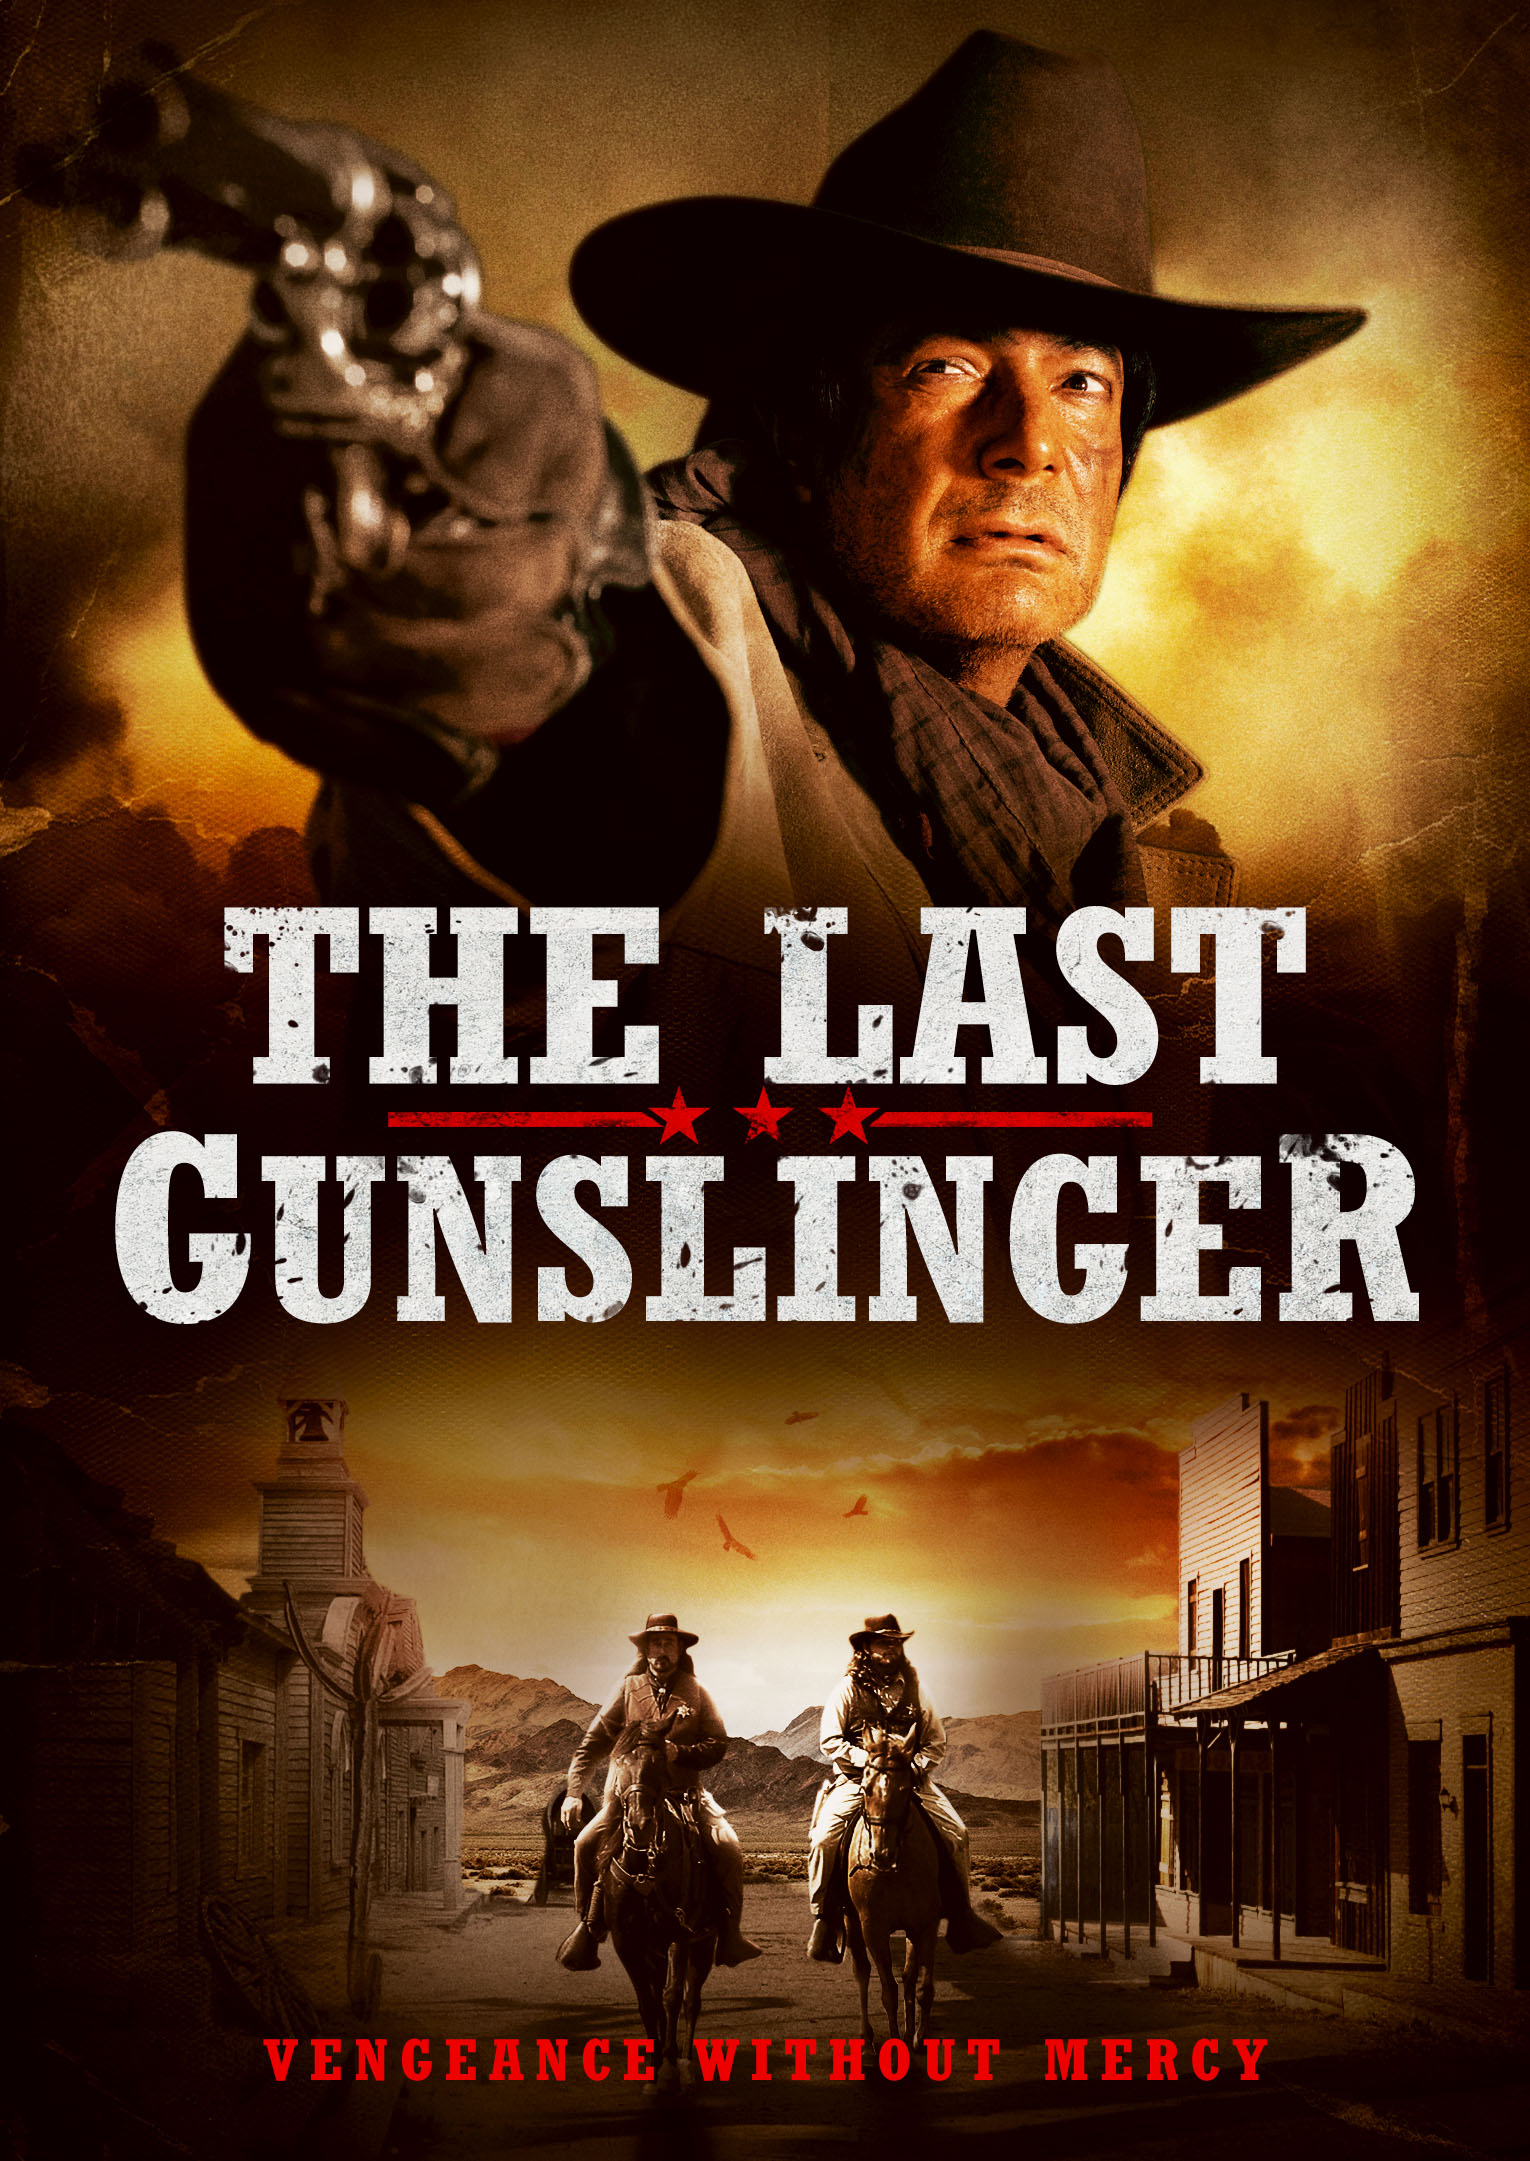 Nonton film The Last Gunslinger layarkaca21 indoxx1 ganool online streaming terbaru